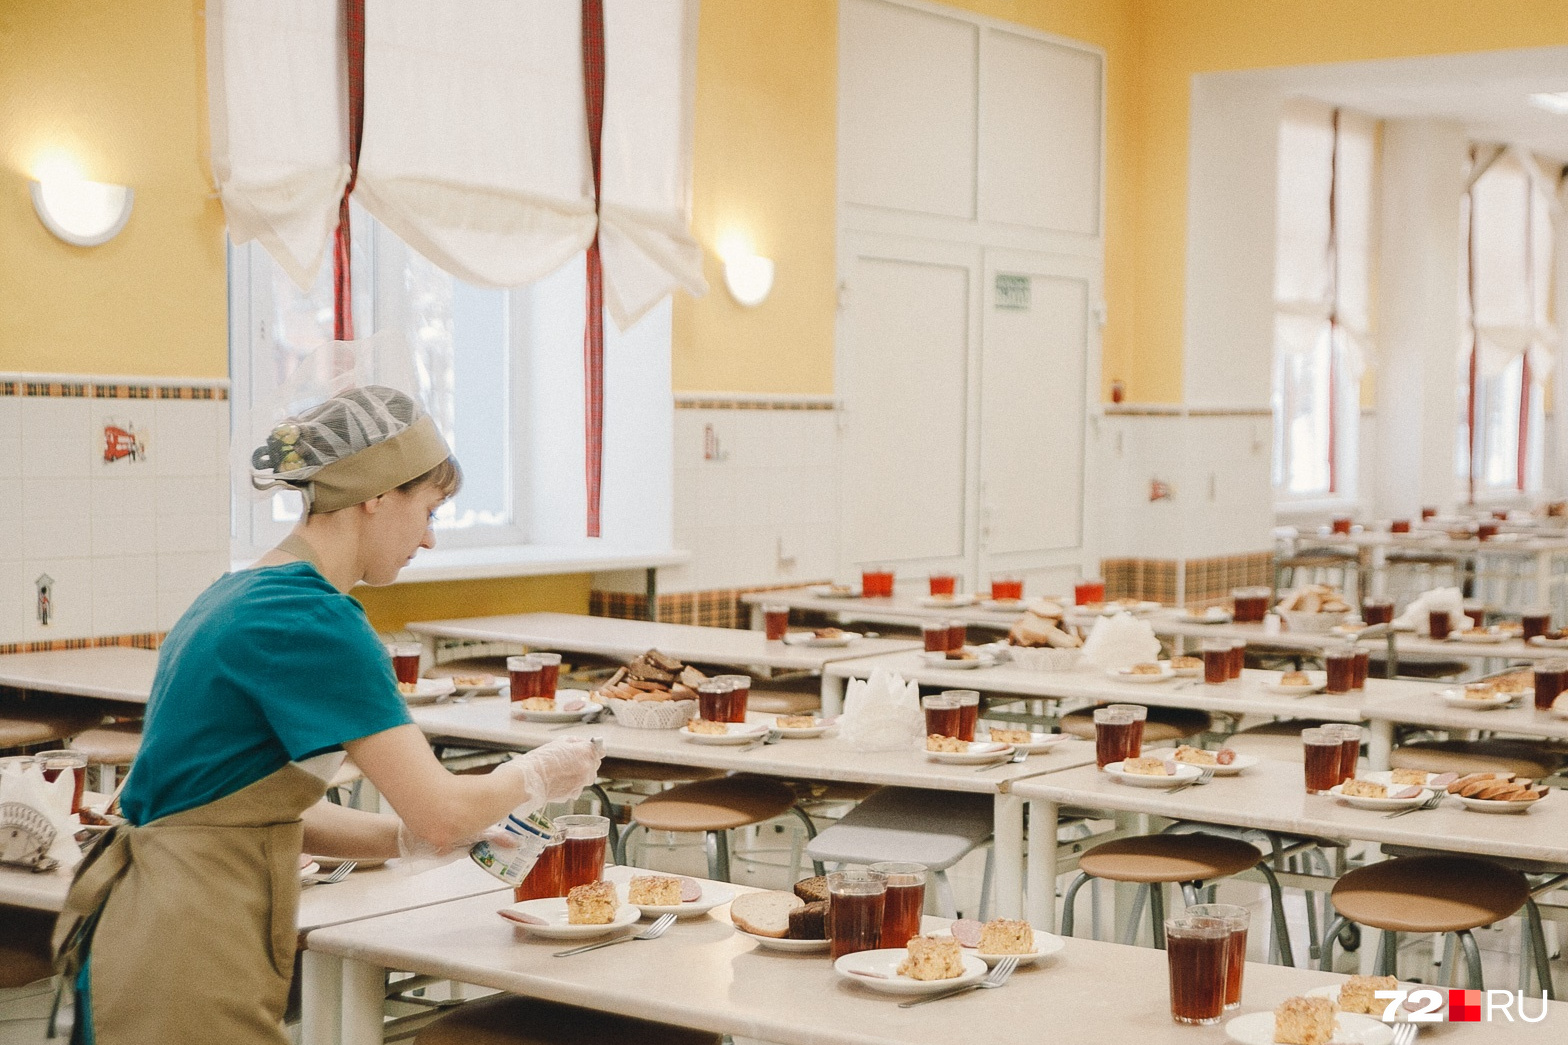 Оплата столовой. Еда в столовой в школе. Хорошая столовая в школе. Школьная столовая 46 школы. Питание в школах Москвы.